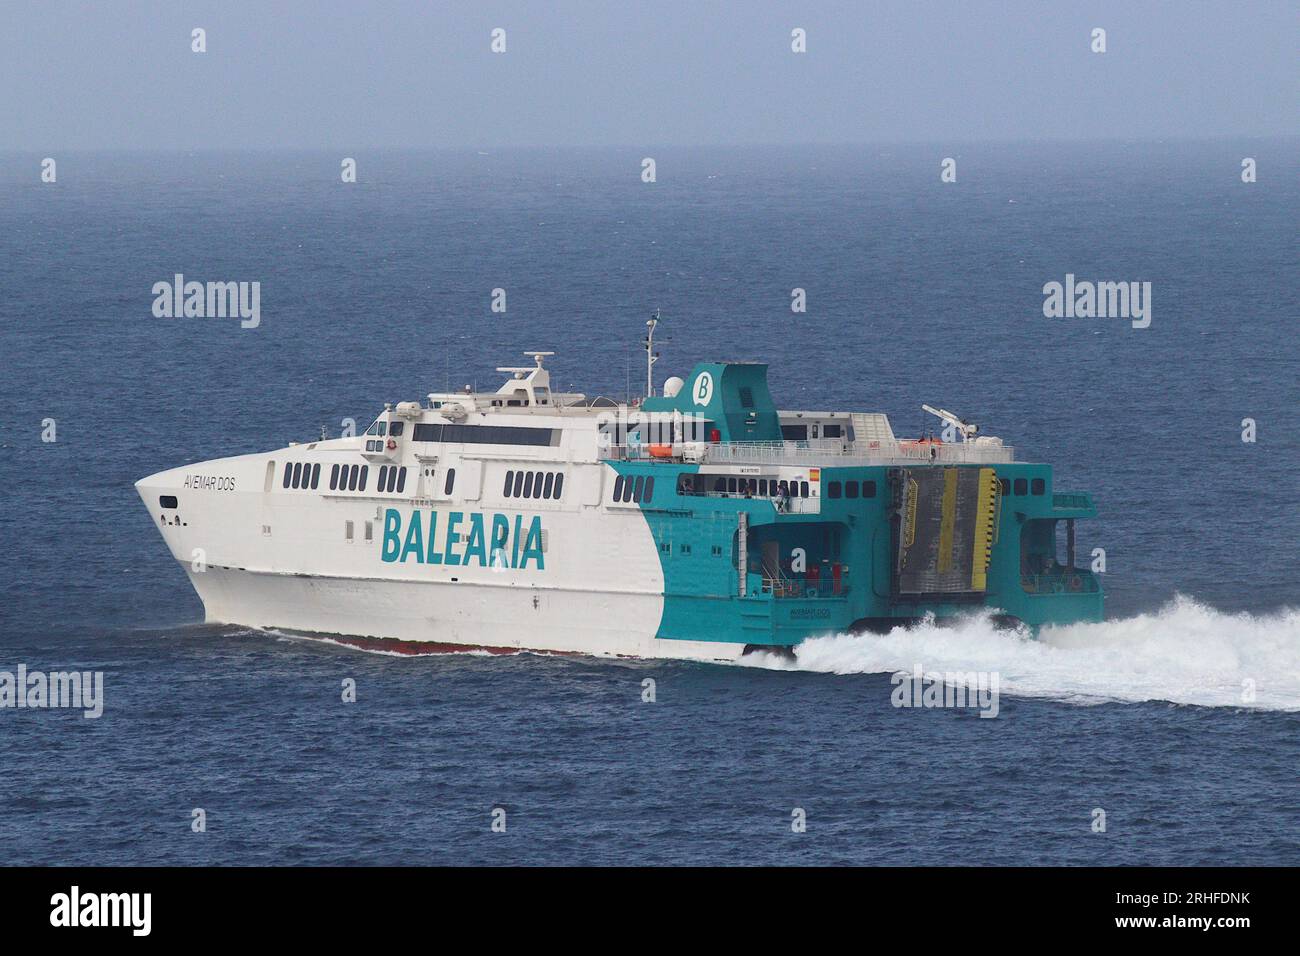 Avemar Dos catamarano veloce traghetto operato da Balearia, parte da Ceuta, Nord Africa diretto ad Algeciras, Spagna, con il servizio Strait South di 31 km. Foto Stock